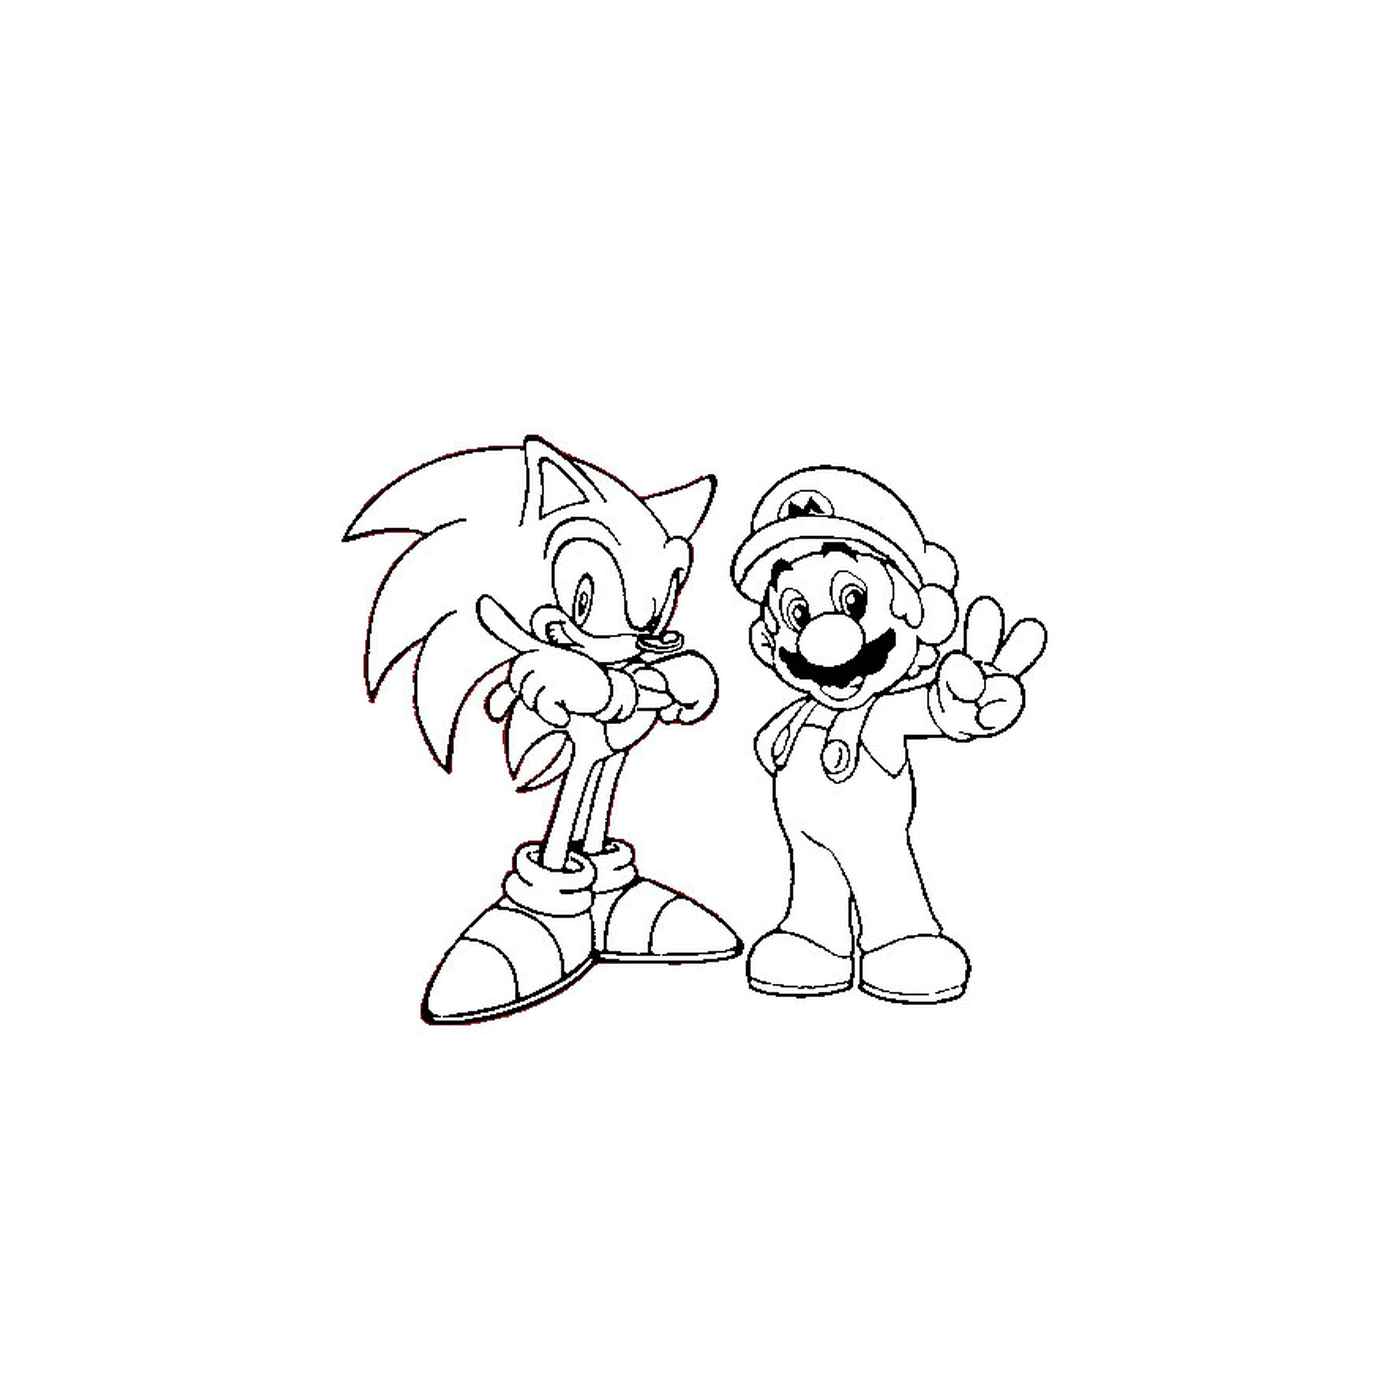  Марио и Соник вместе 